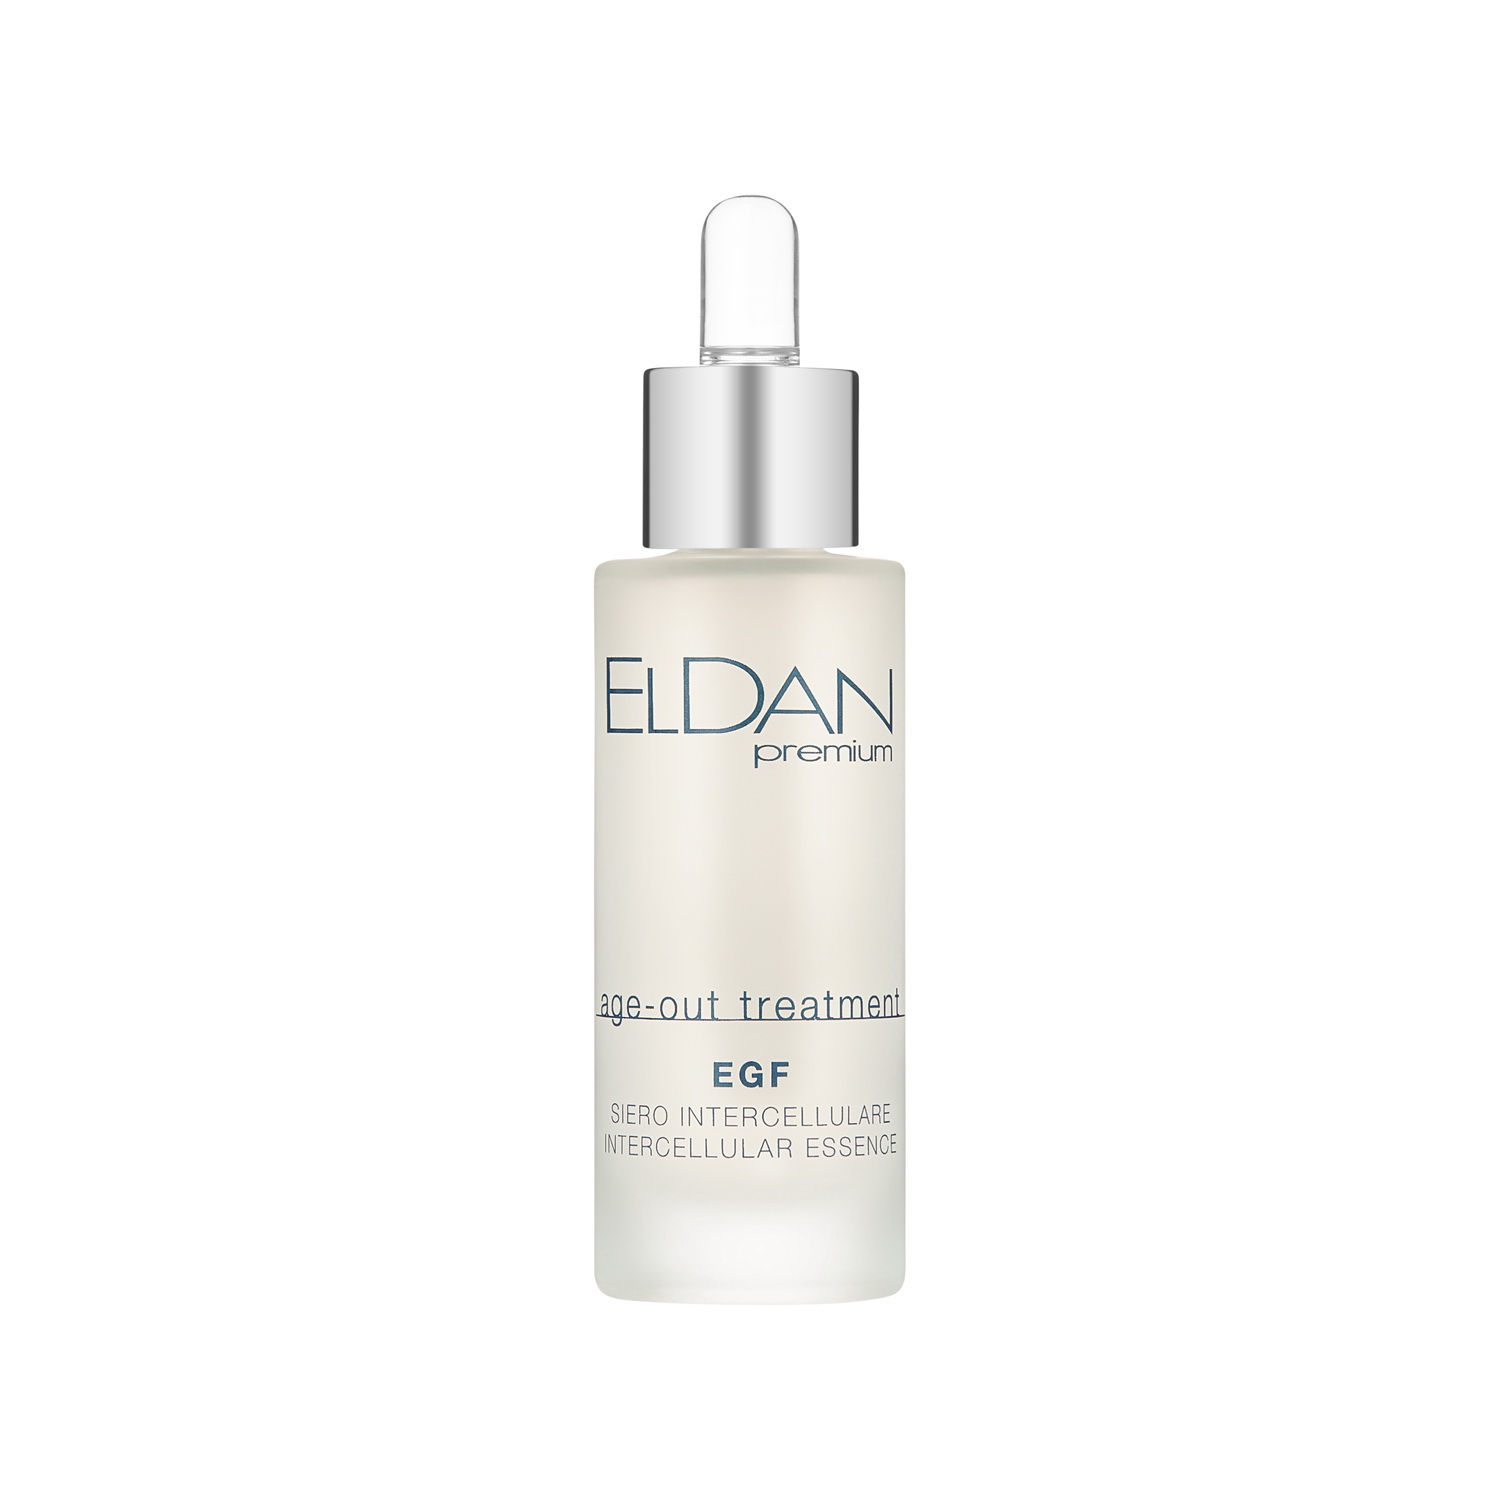 Сыворотка для лица Eldan Cosmetics EGF Intercellular Essence регенерирующая, 30 мл inspira cosmetics разглаживающая морщины и устраняющая сухость сыворотка 30 мл